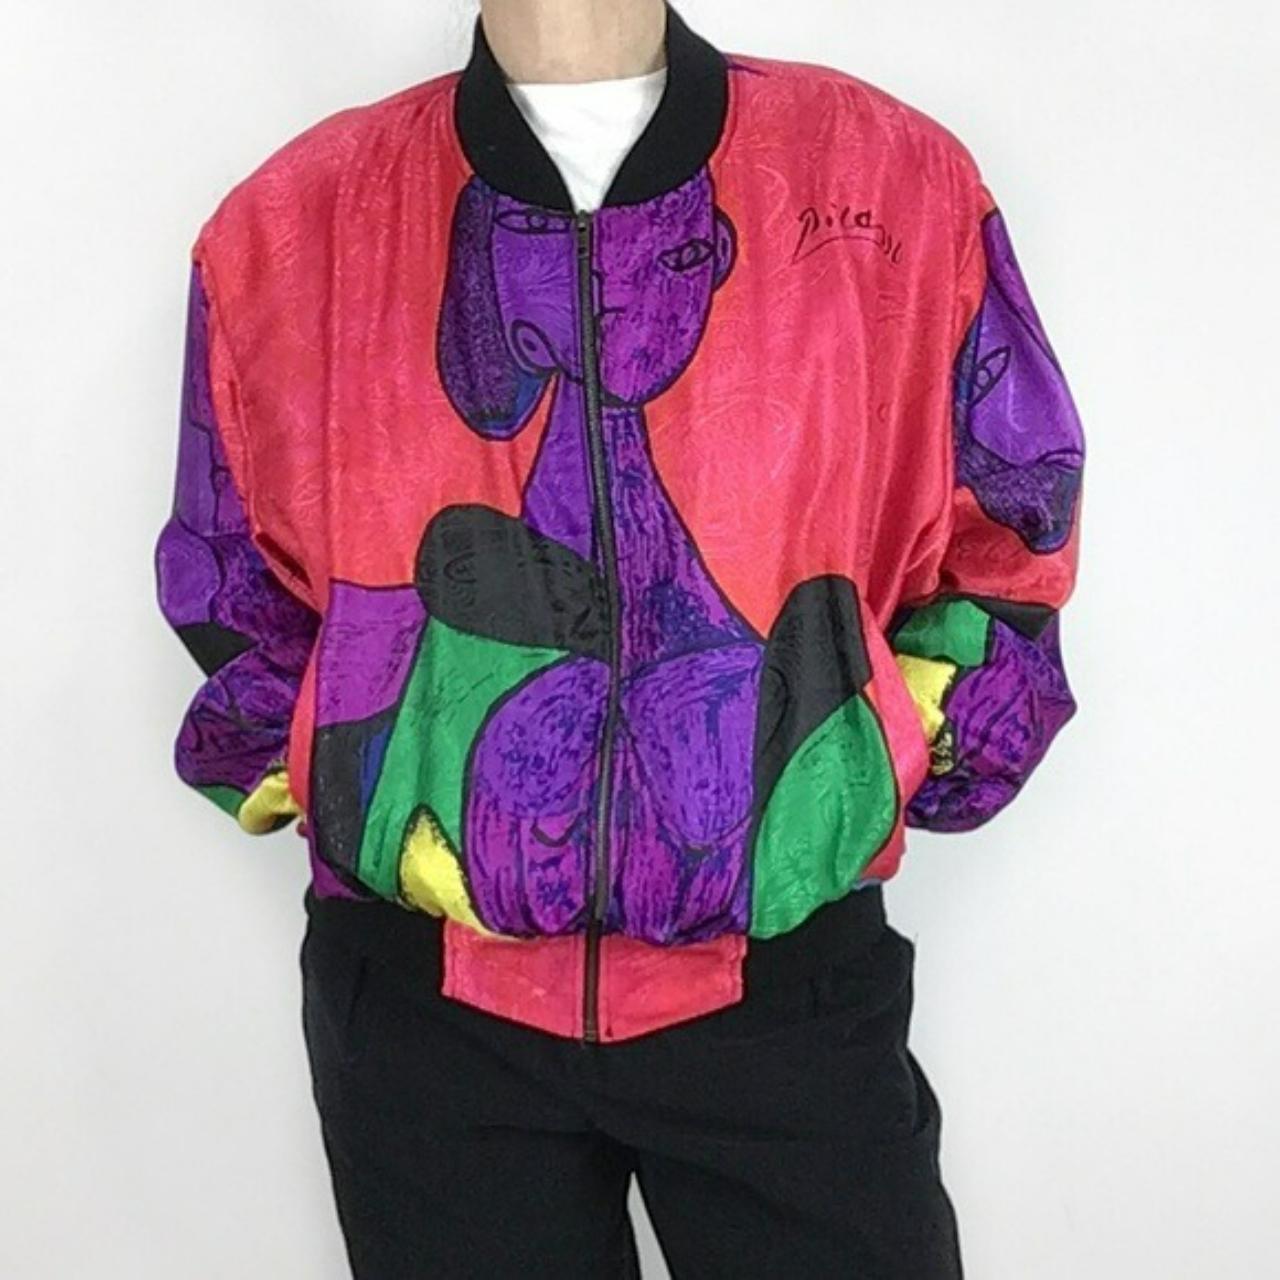 Picasso Bomber jacket M - L vintage rave disco 80s... - Depop